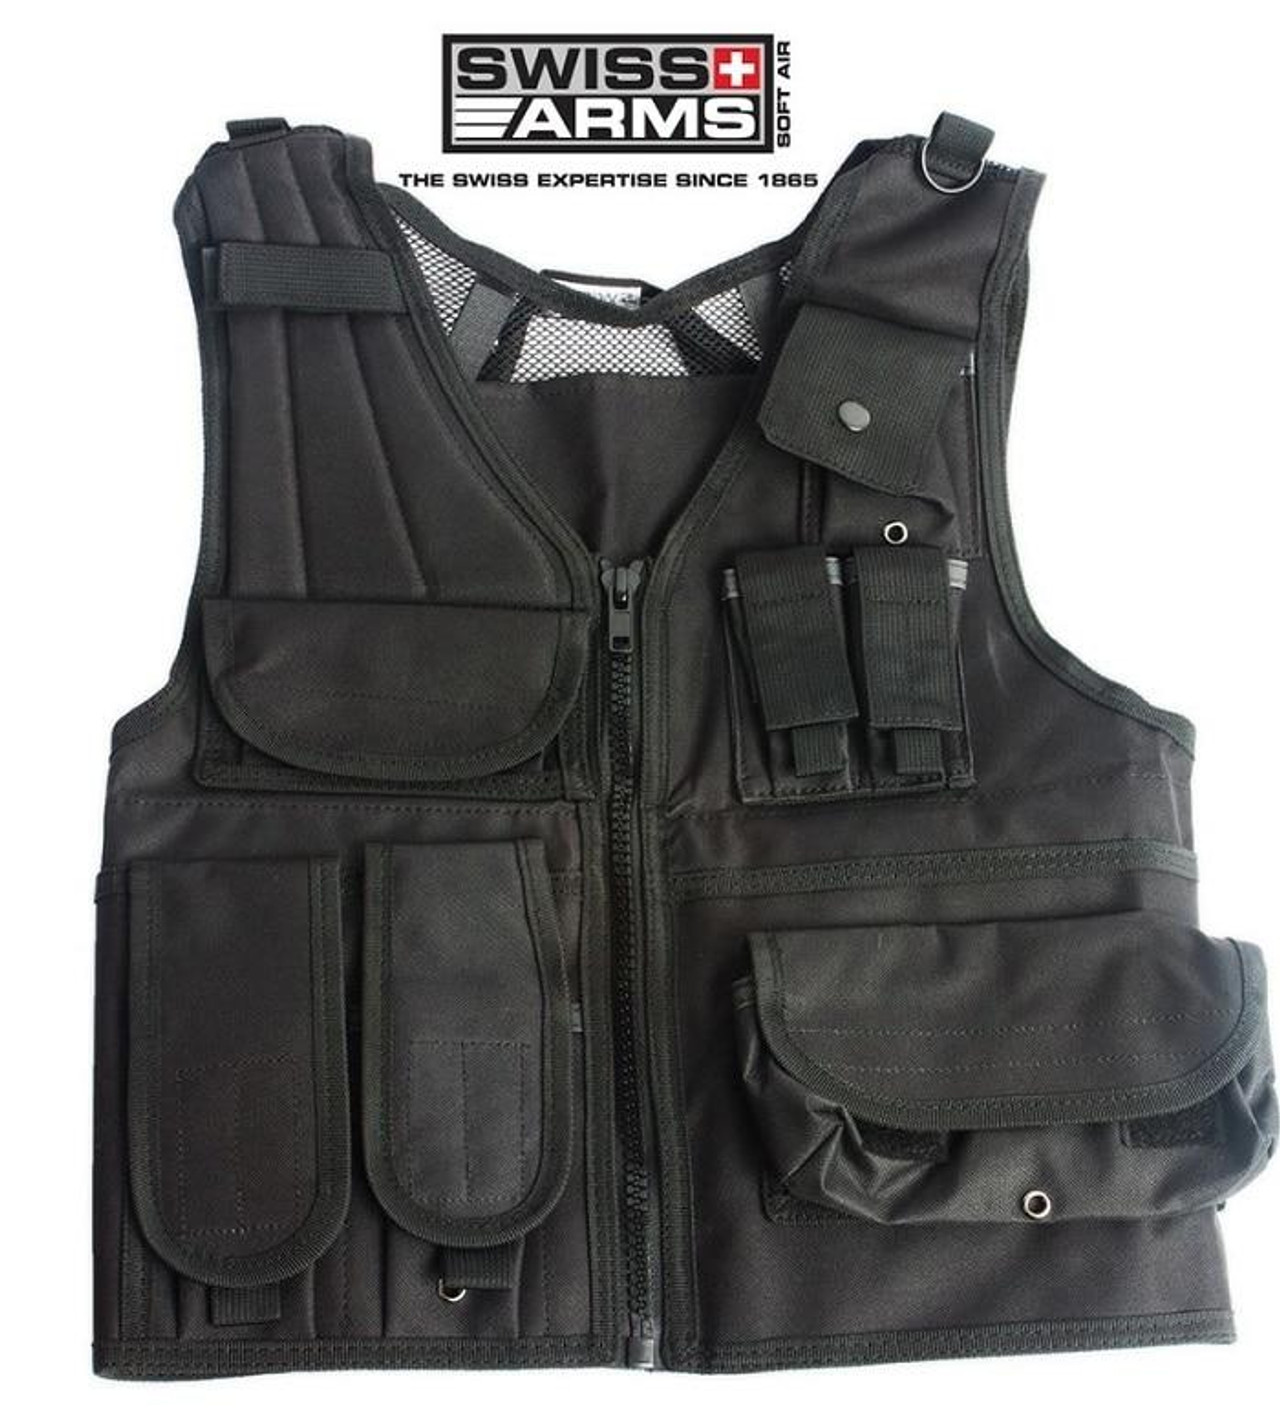 Swiss Arms Tactical Vest - Black